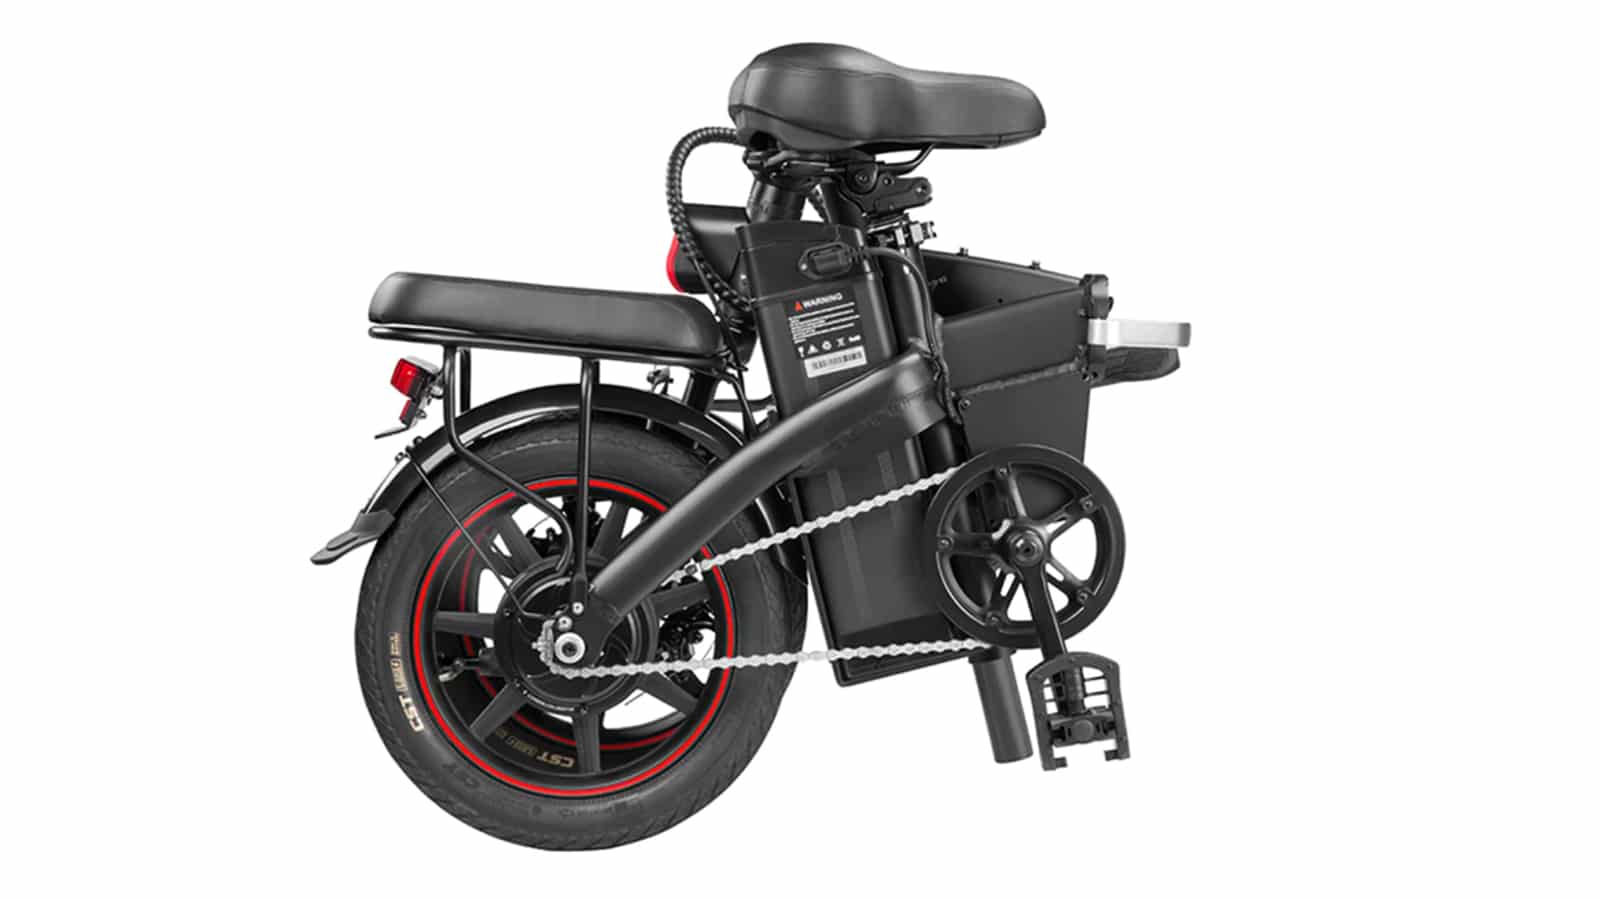 DYU A5 ηλεκτρικά ποδήλατα, DYU A5: Αναδιπλούμενο ηλεκτρικό ποδήλατο για να κινείστε με στυλ και ασφάλεια